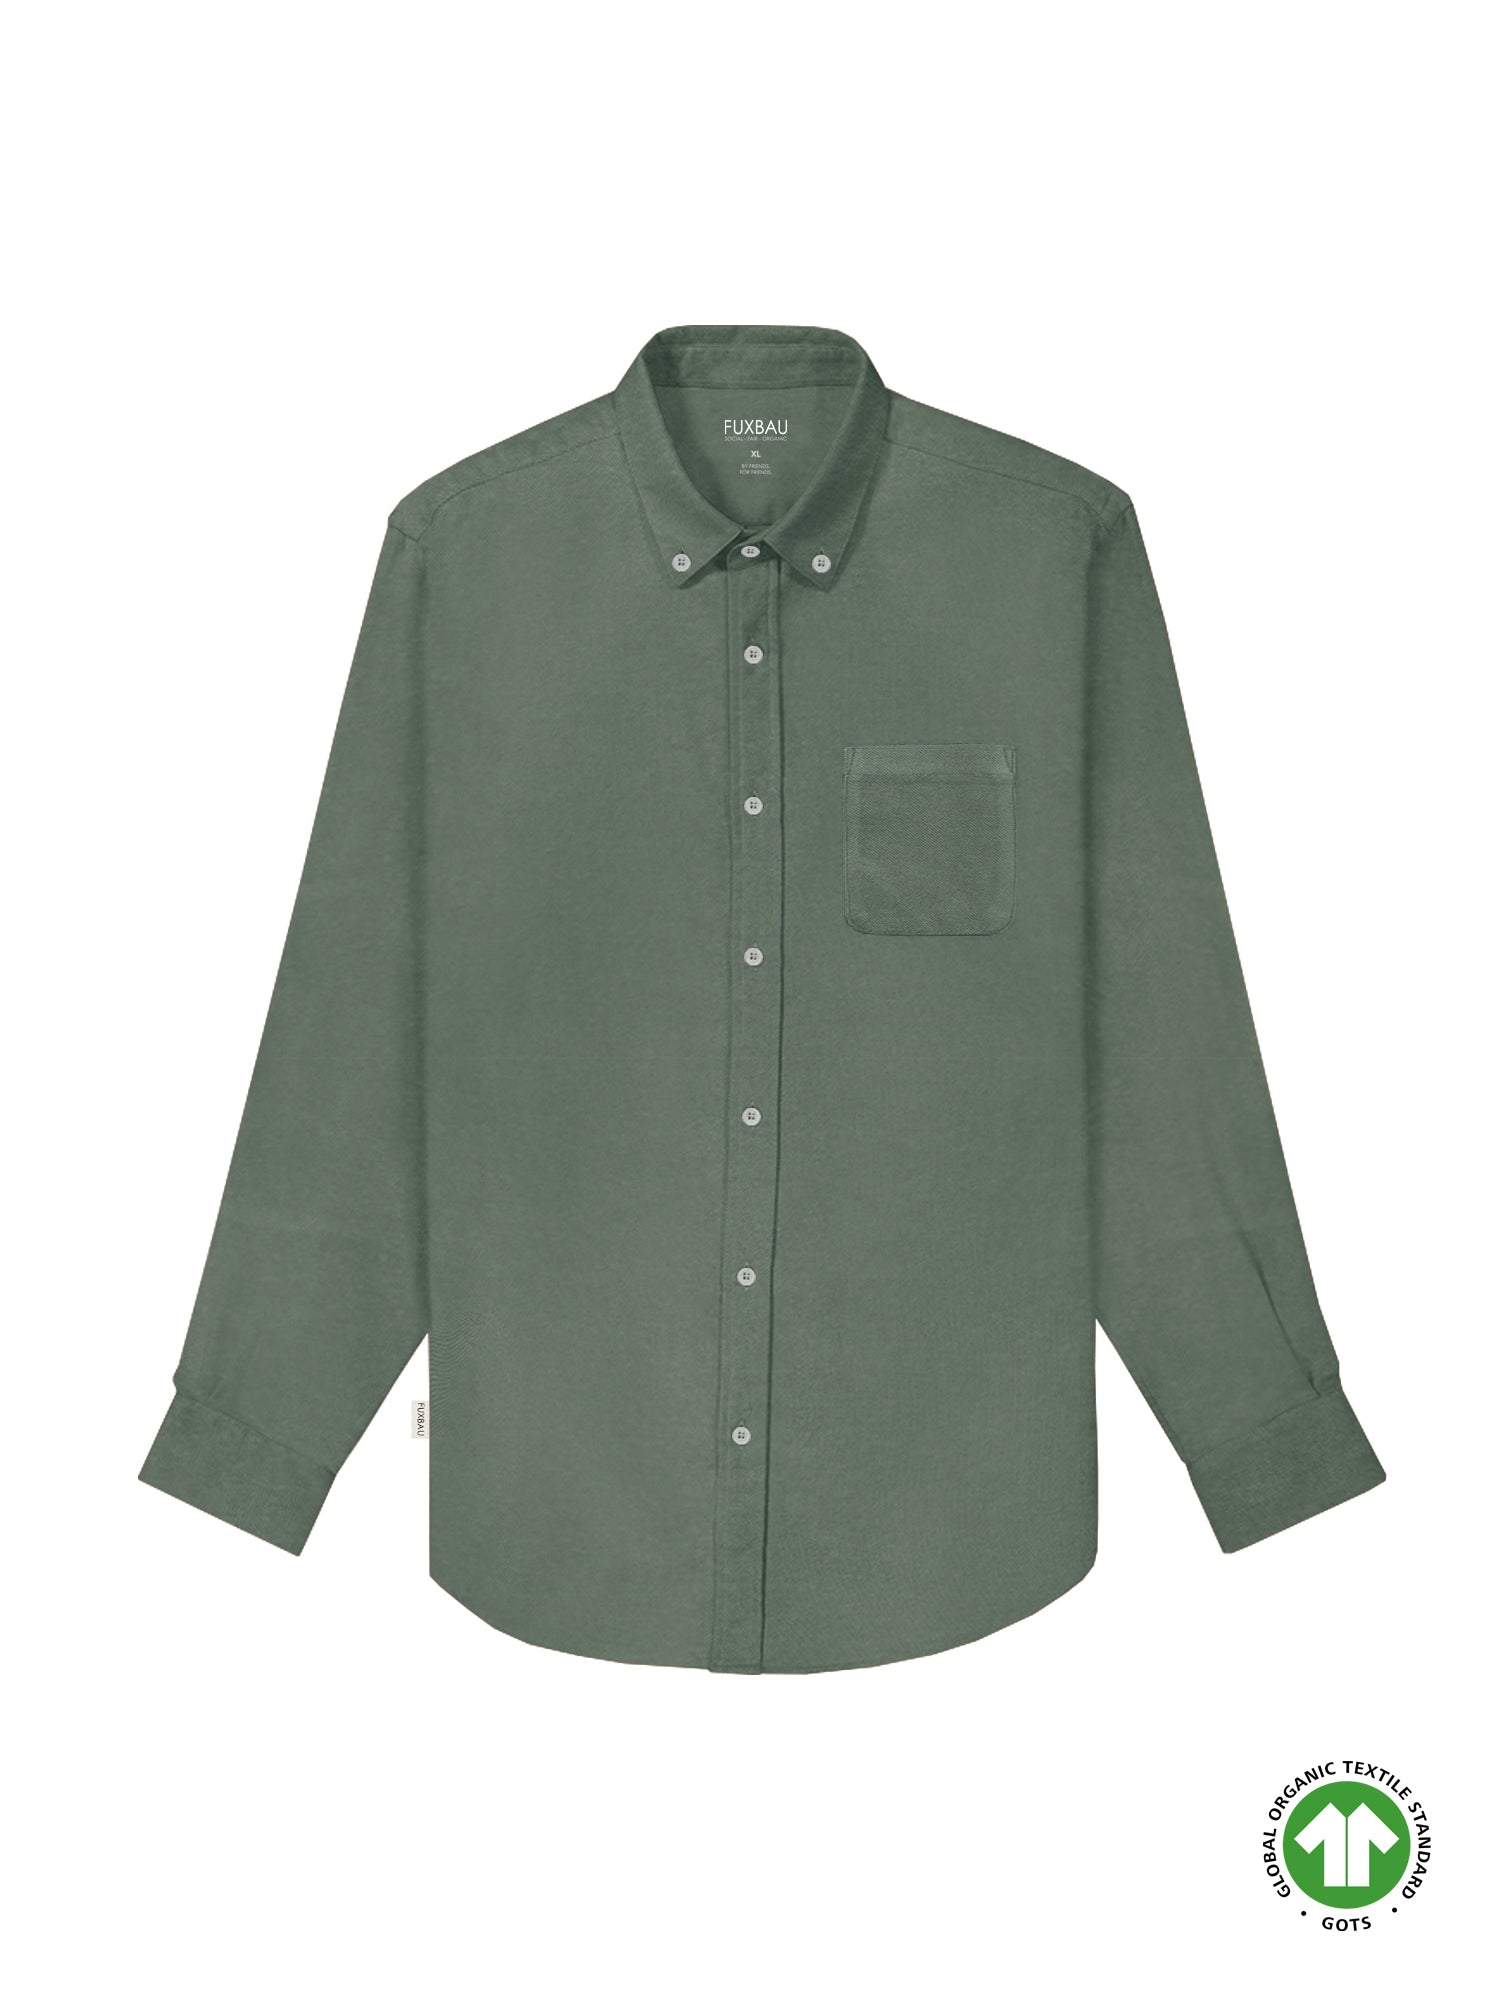 FUXBAU Männer Hemd in grün aus 100% GOTS zertifizierter Biobaumwolle und faire in Portugal hergestellt.